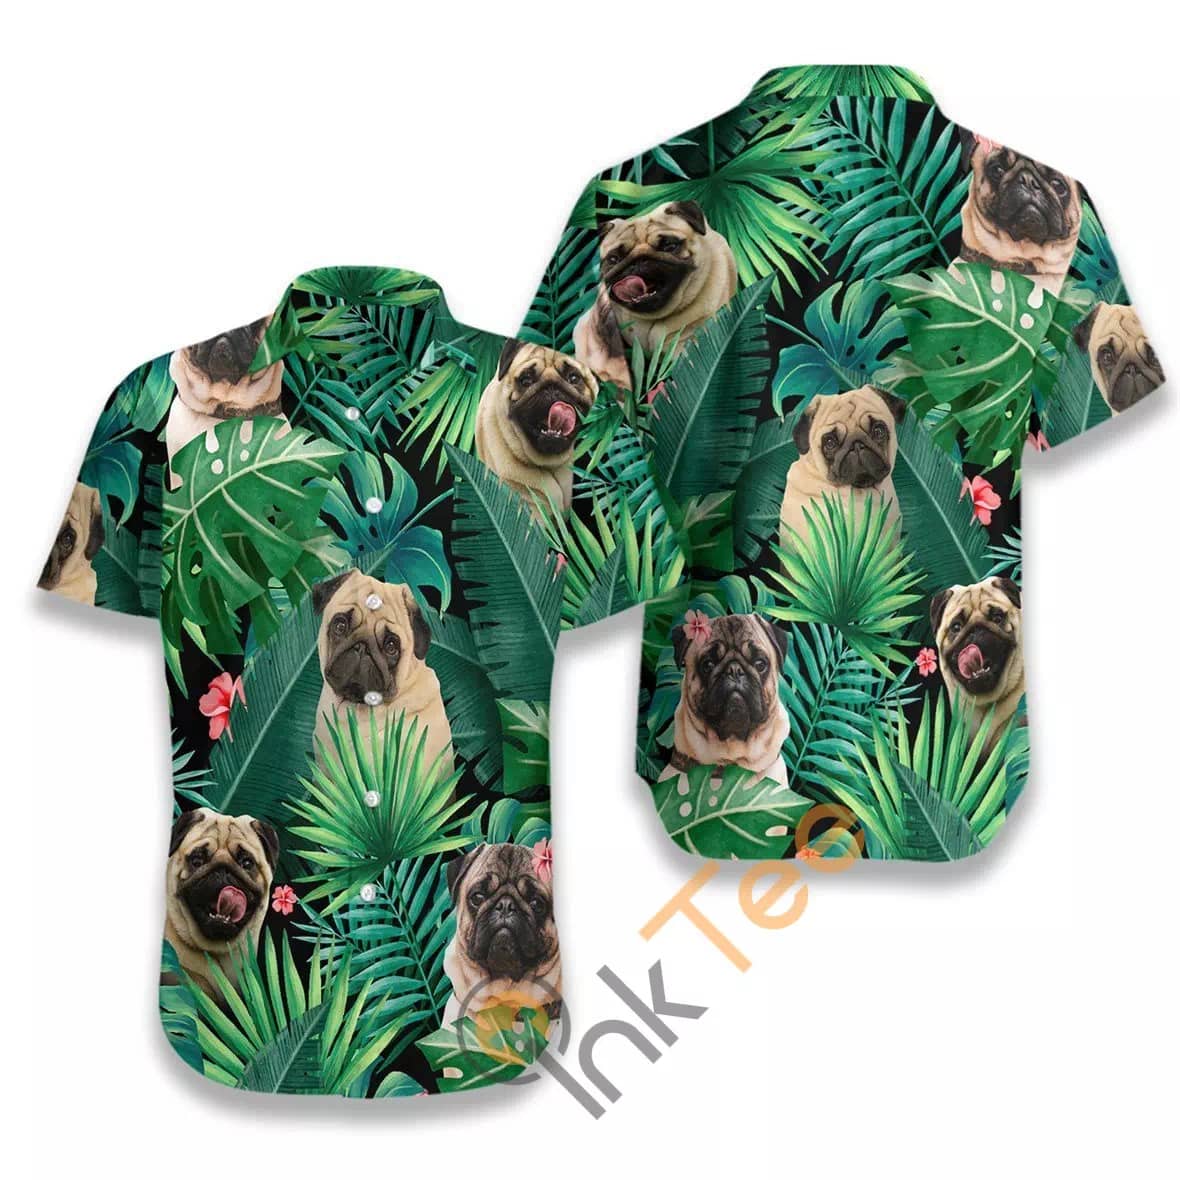 Tropical Pug N516 Hawaiian shirts